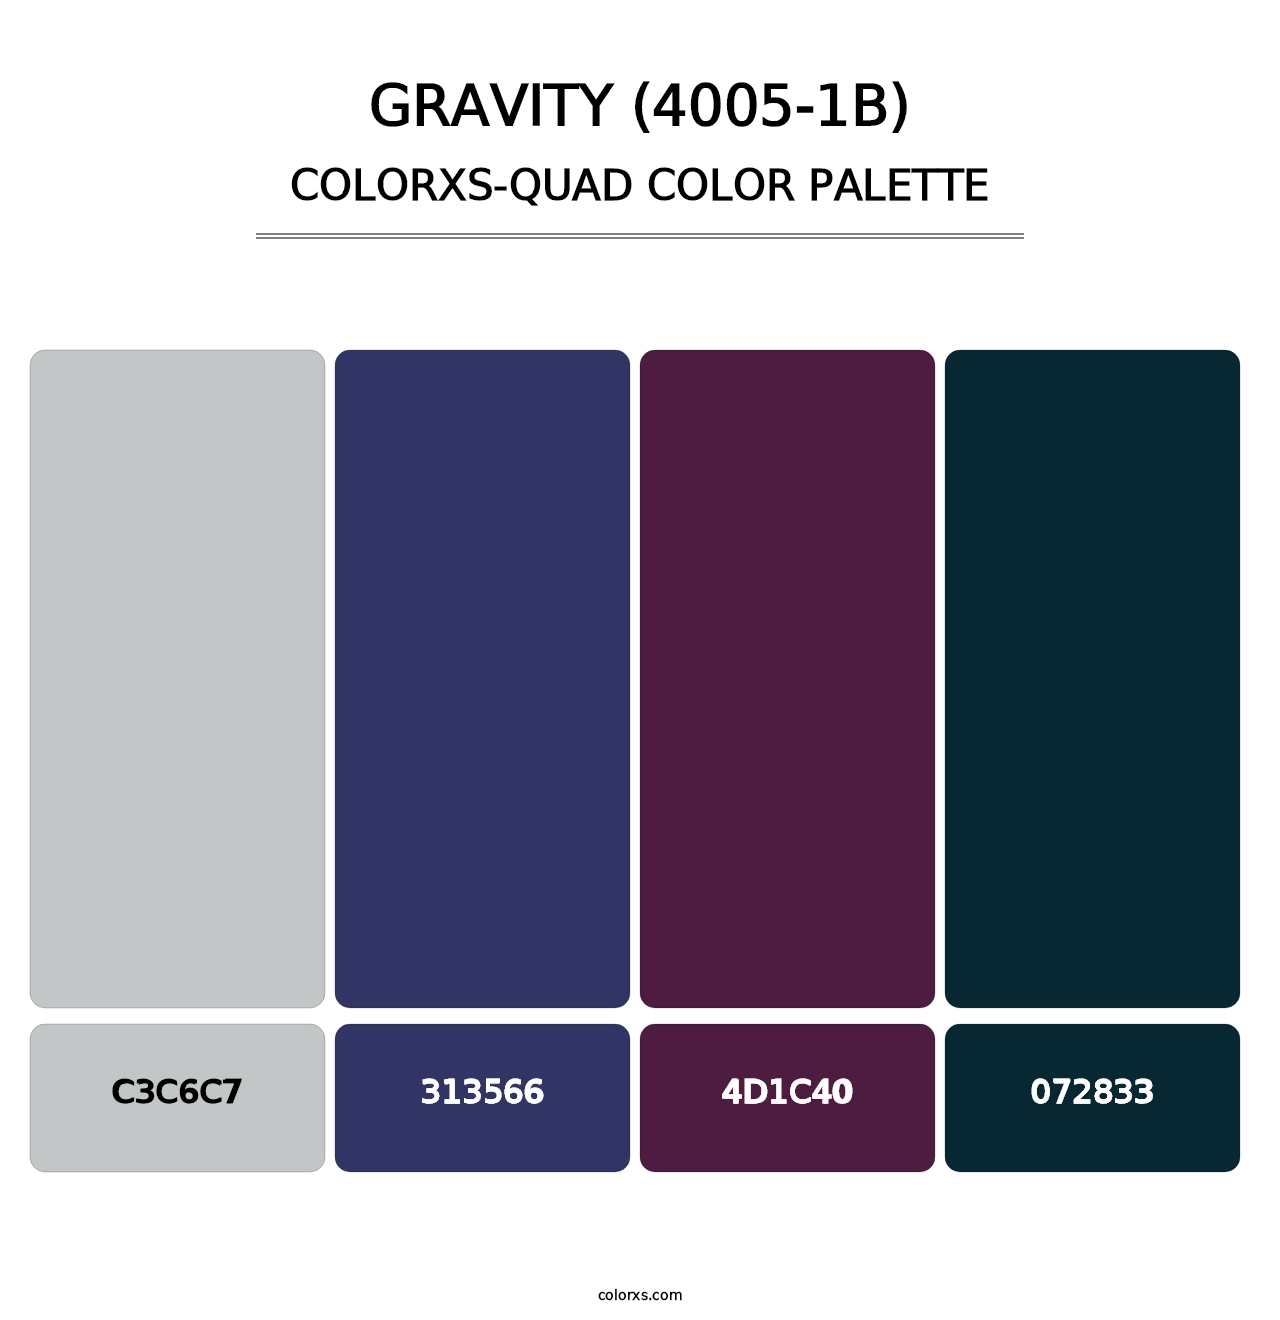 Gravity (4005-1B) - Colorxs Quad Palette